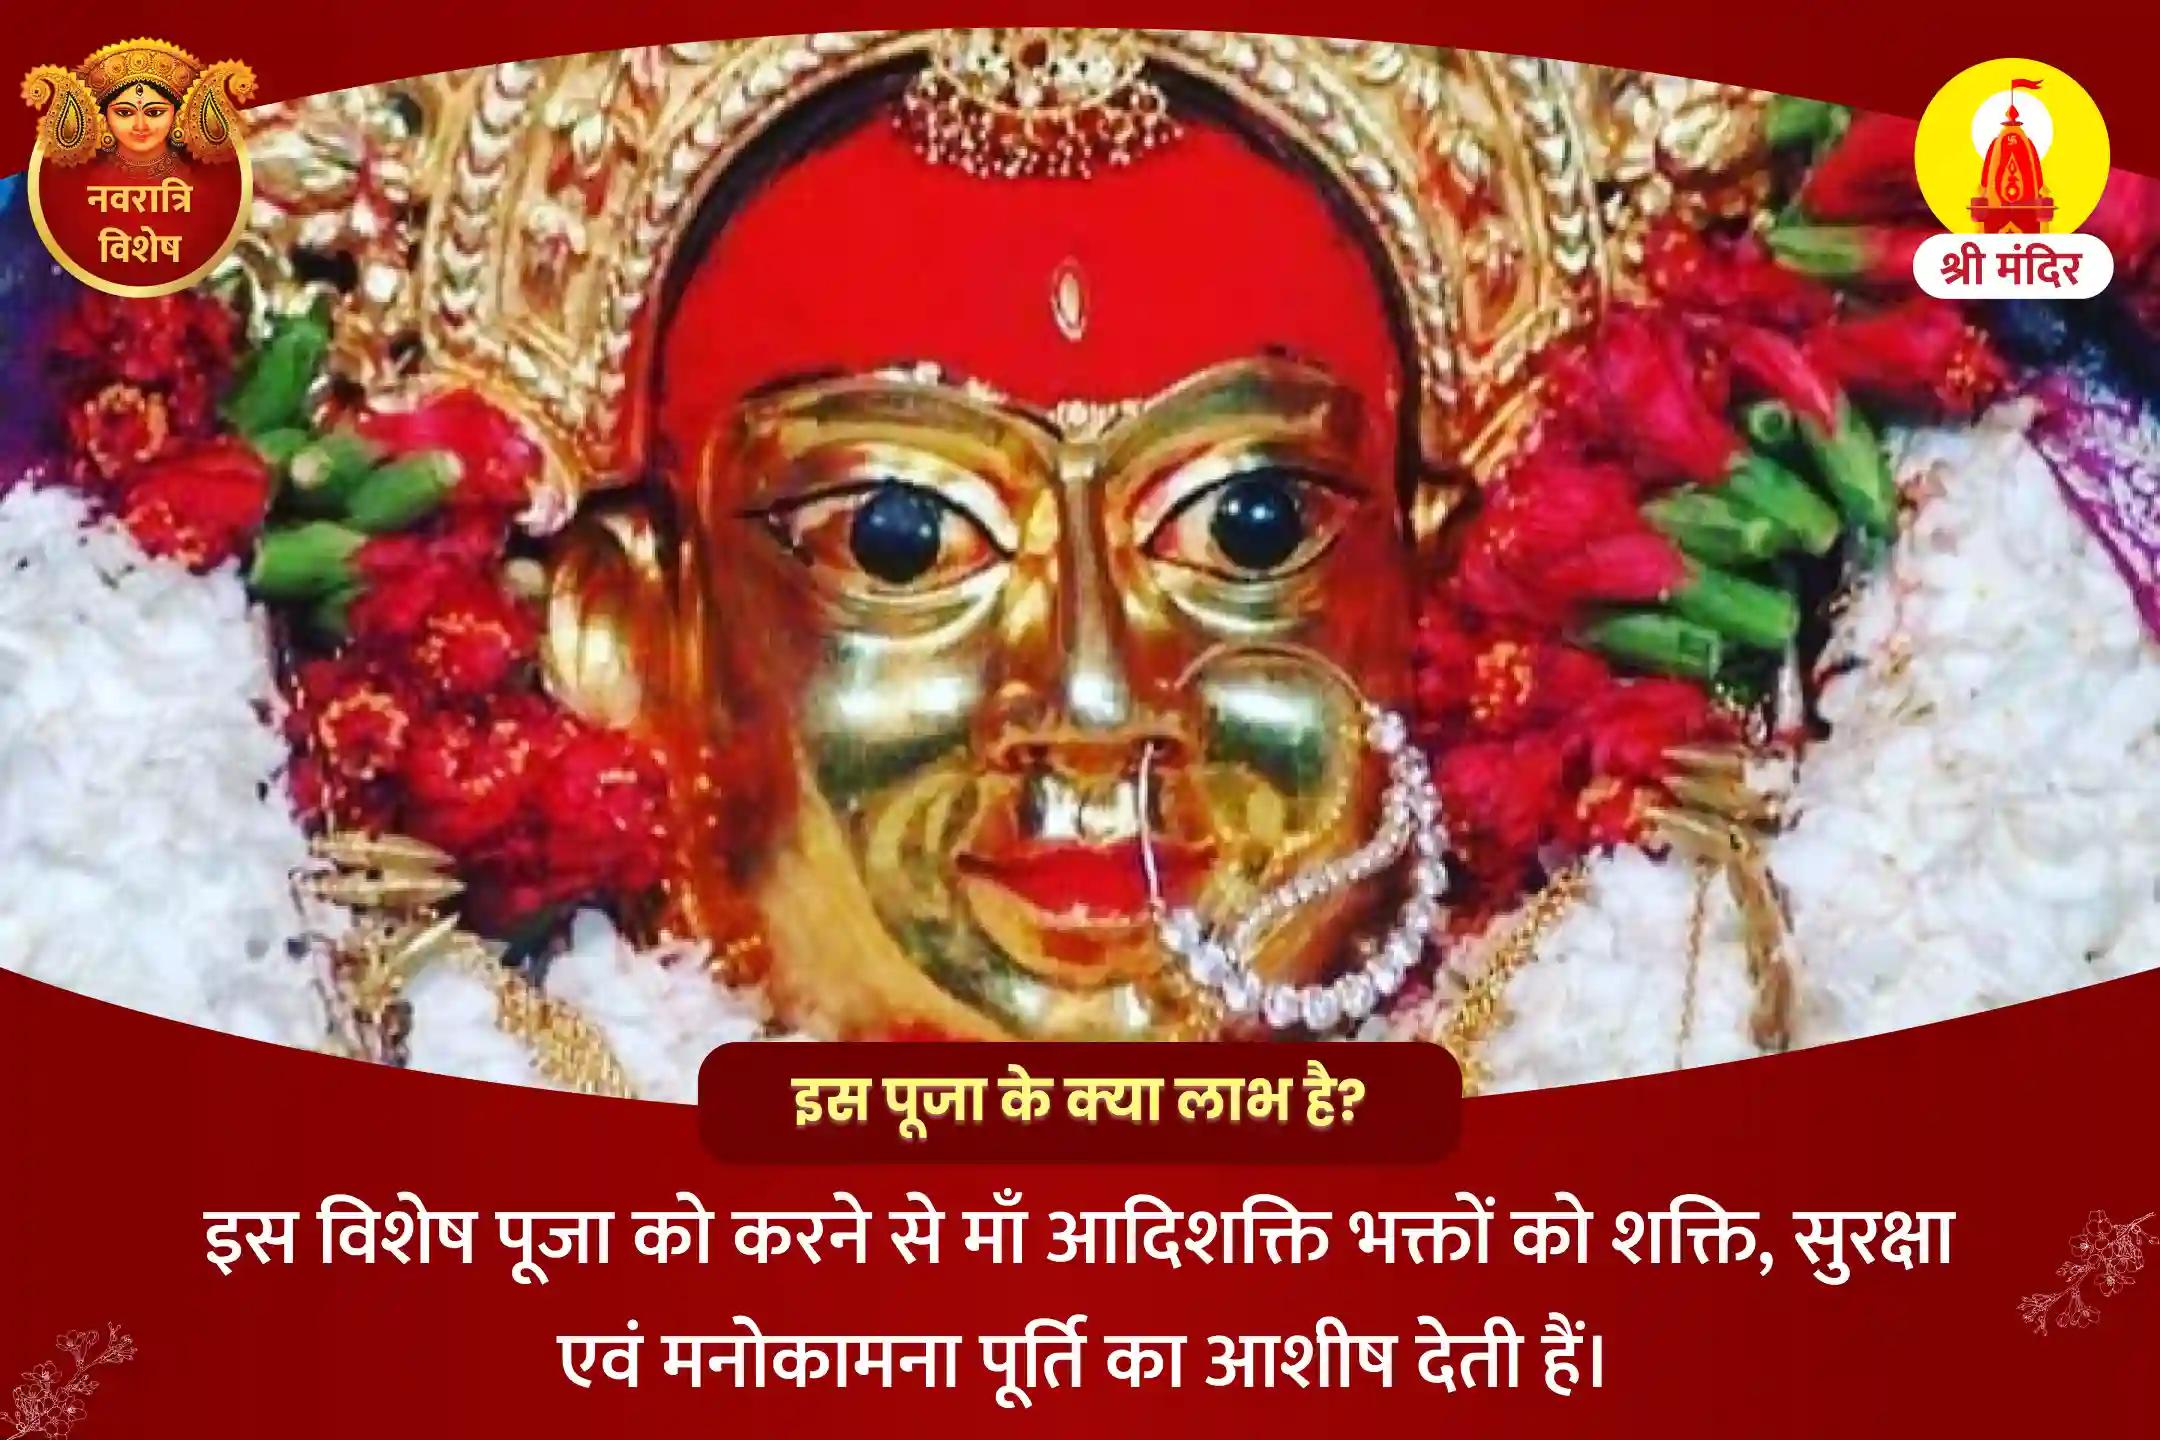 नवरात्रि सप्तमी विशेष शक्ति, सुरक्षा और मनोकामना पूर्ति के लिए आदिशक्ति अभिषेकात्मक महापूजा एवं नव दुर्गा यज्ञ